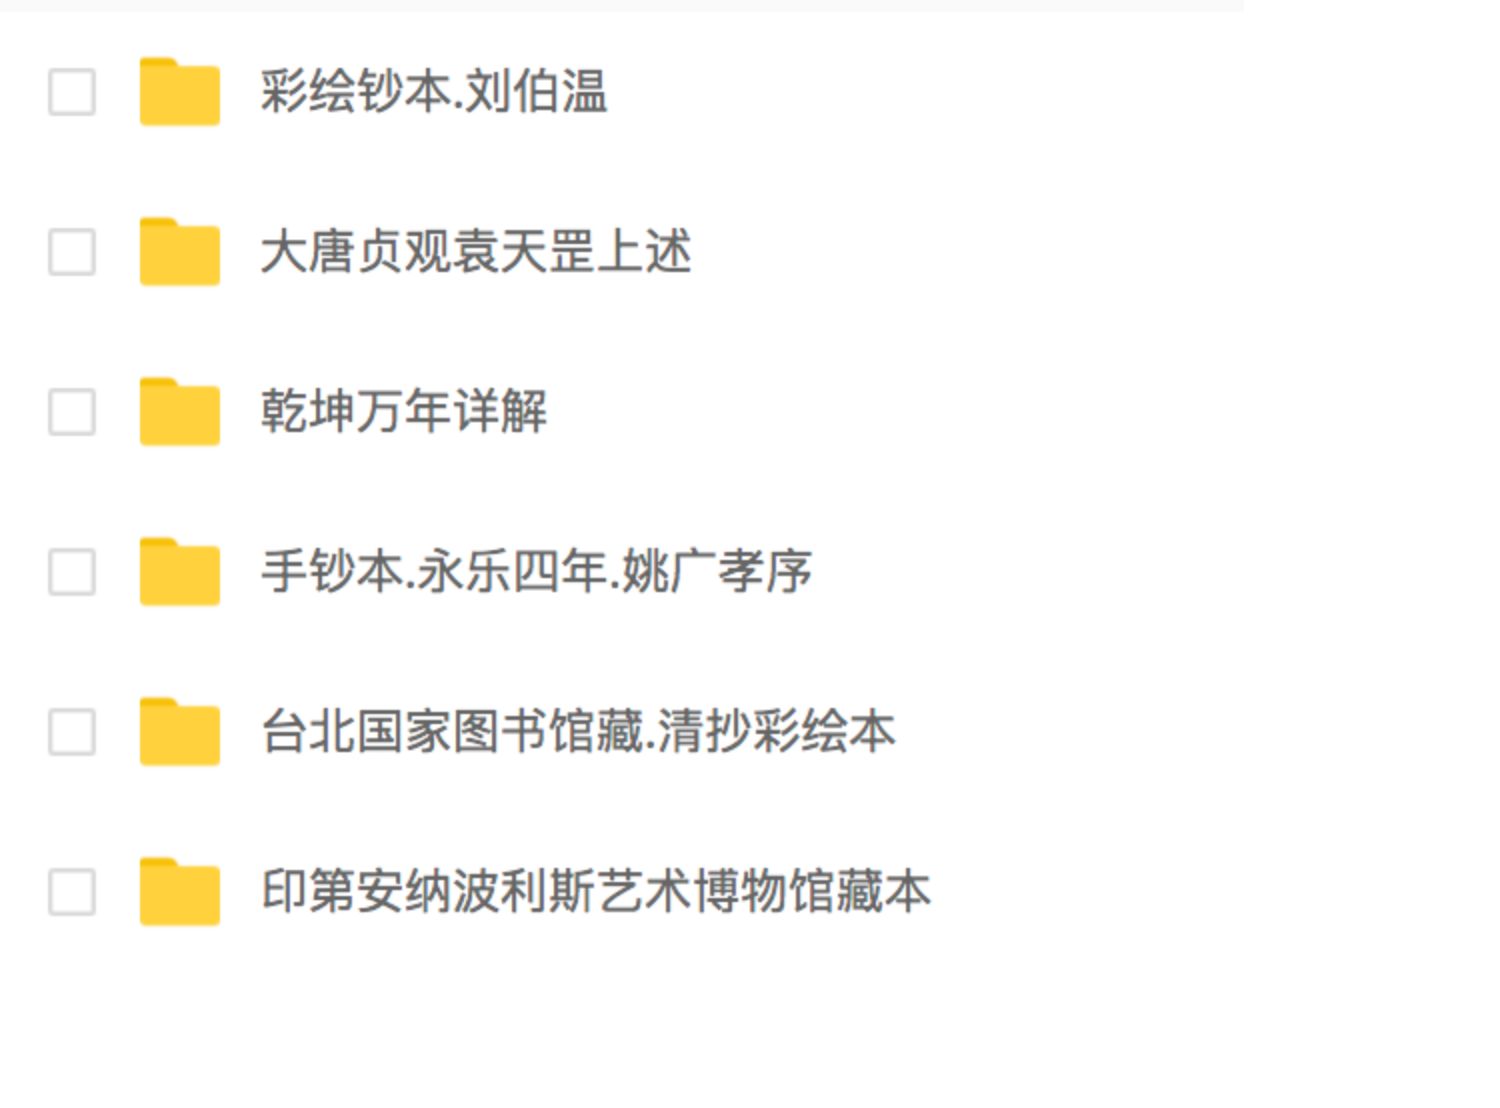 《推背图》袁天罡刘伯温注释解读解析13个版本电子版下载